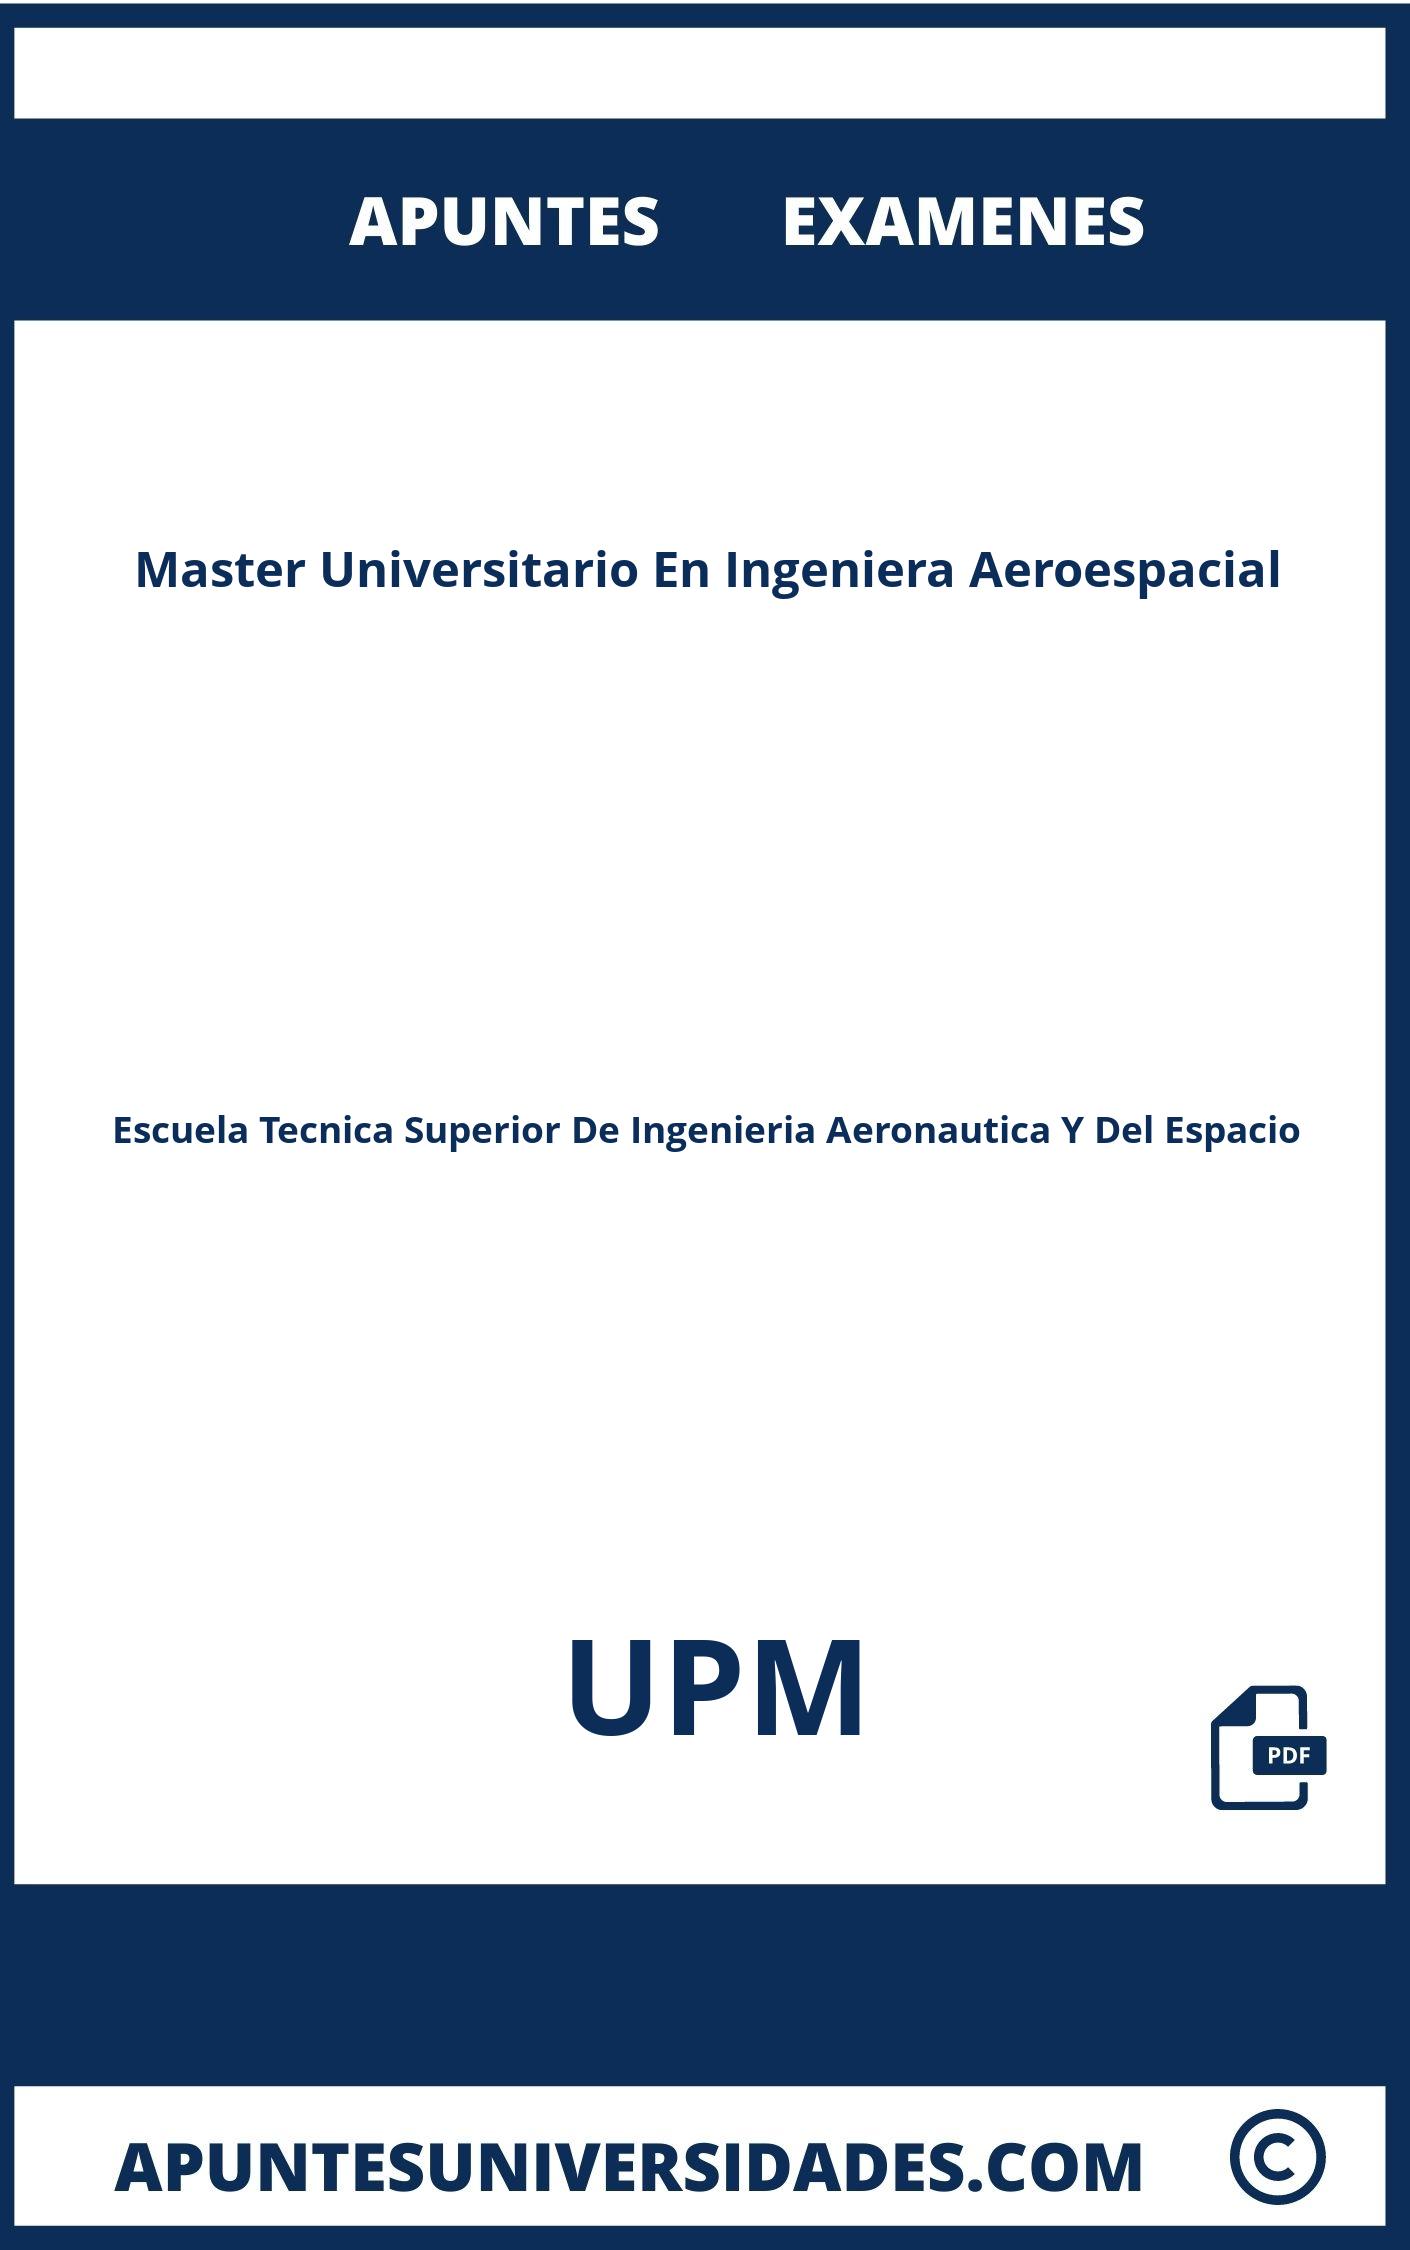 Apuntes Examenes Master Universitario En Ingeniera Aeroespacial UPM